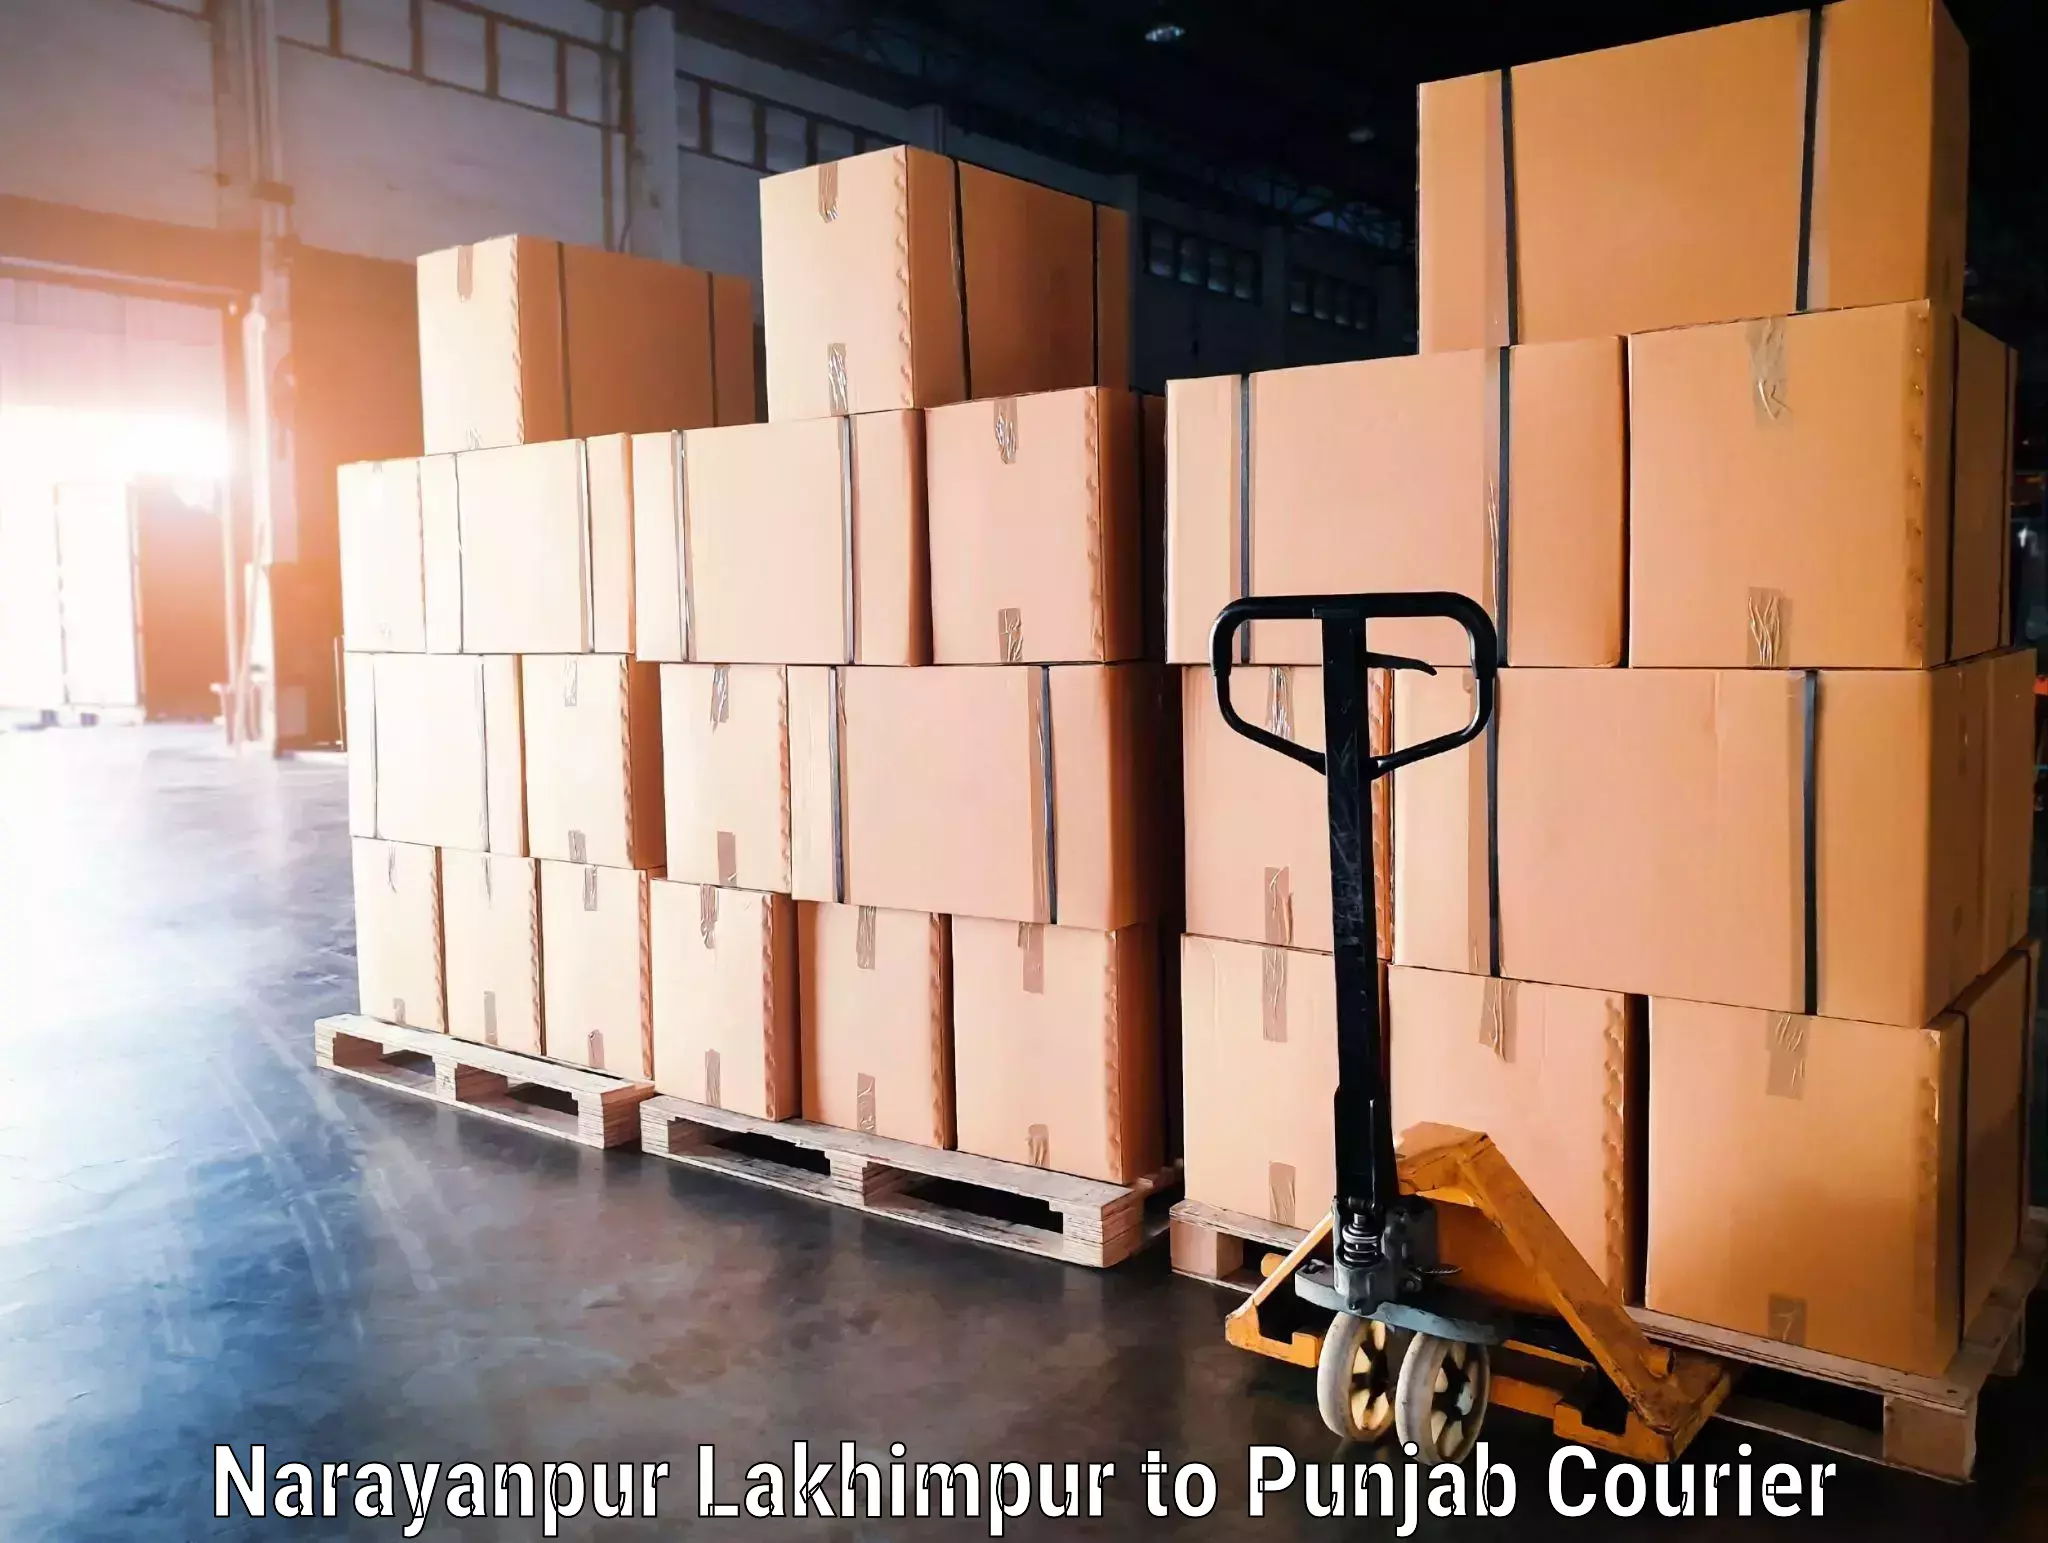 Luggage dispatch service Narayanpur Lakhimpur to Amritsar